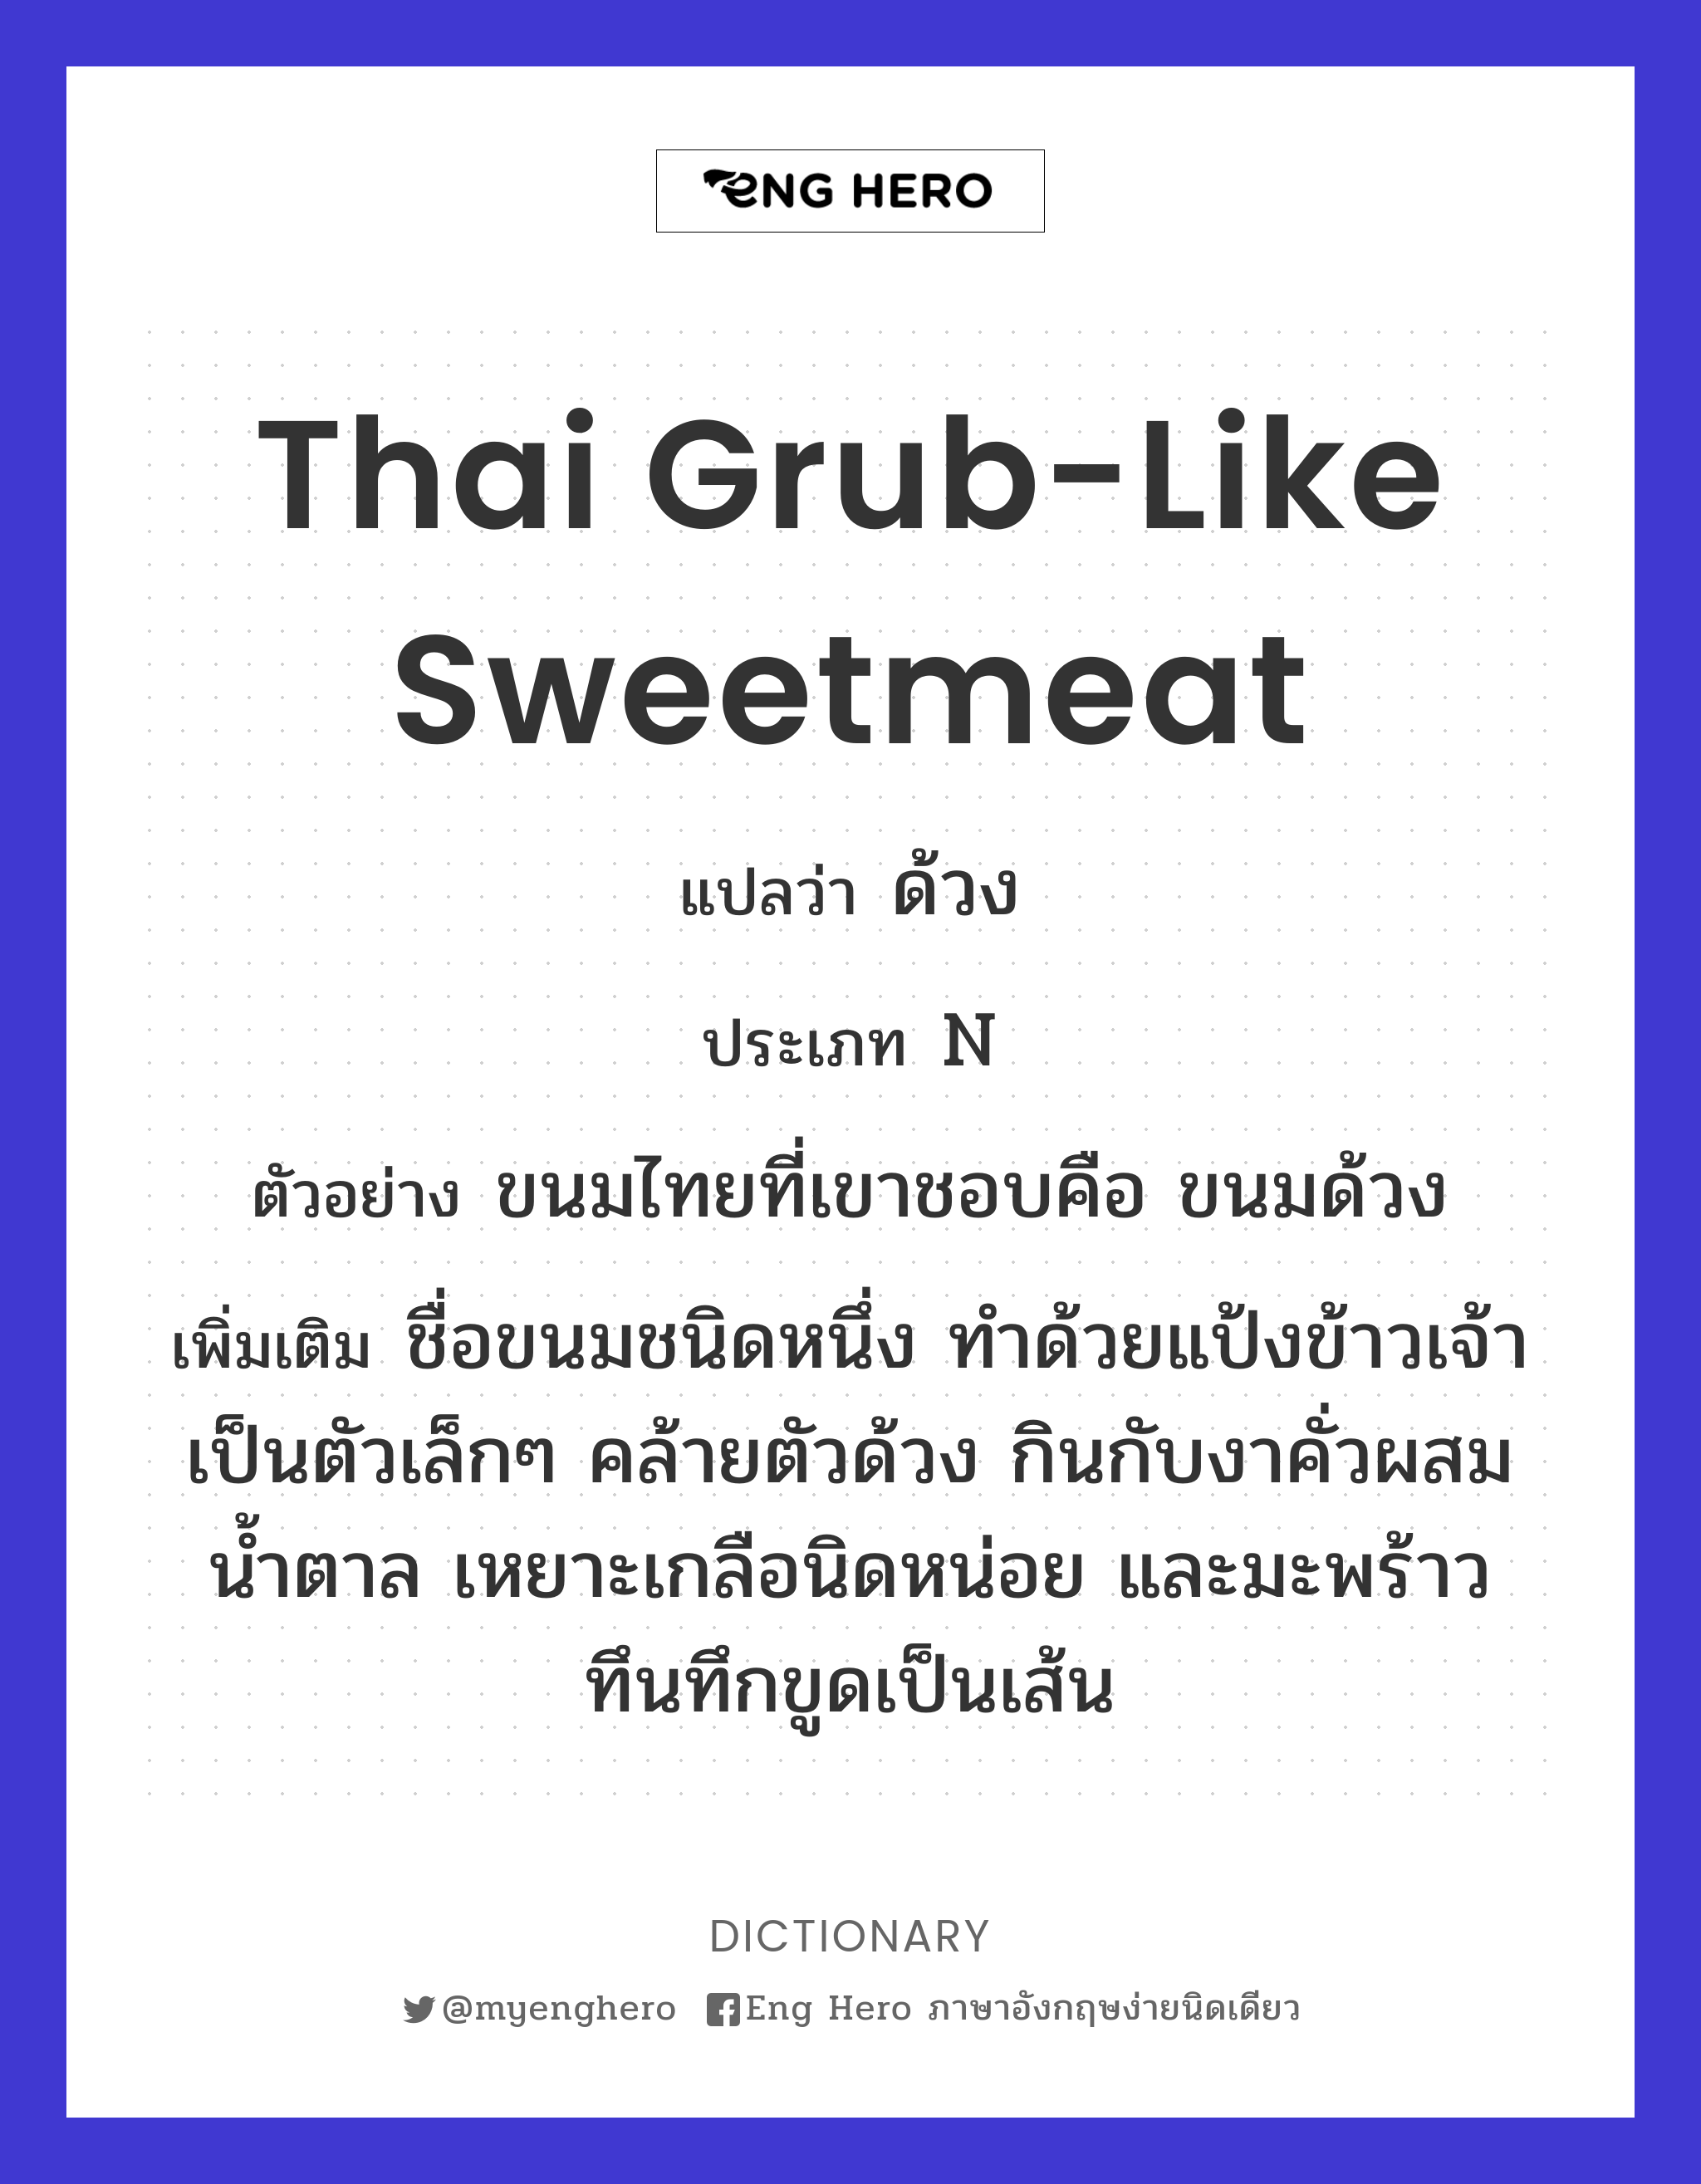 Thai grub-like sweetmeat